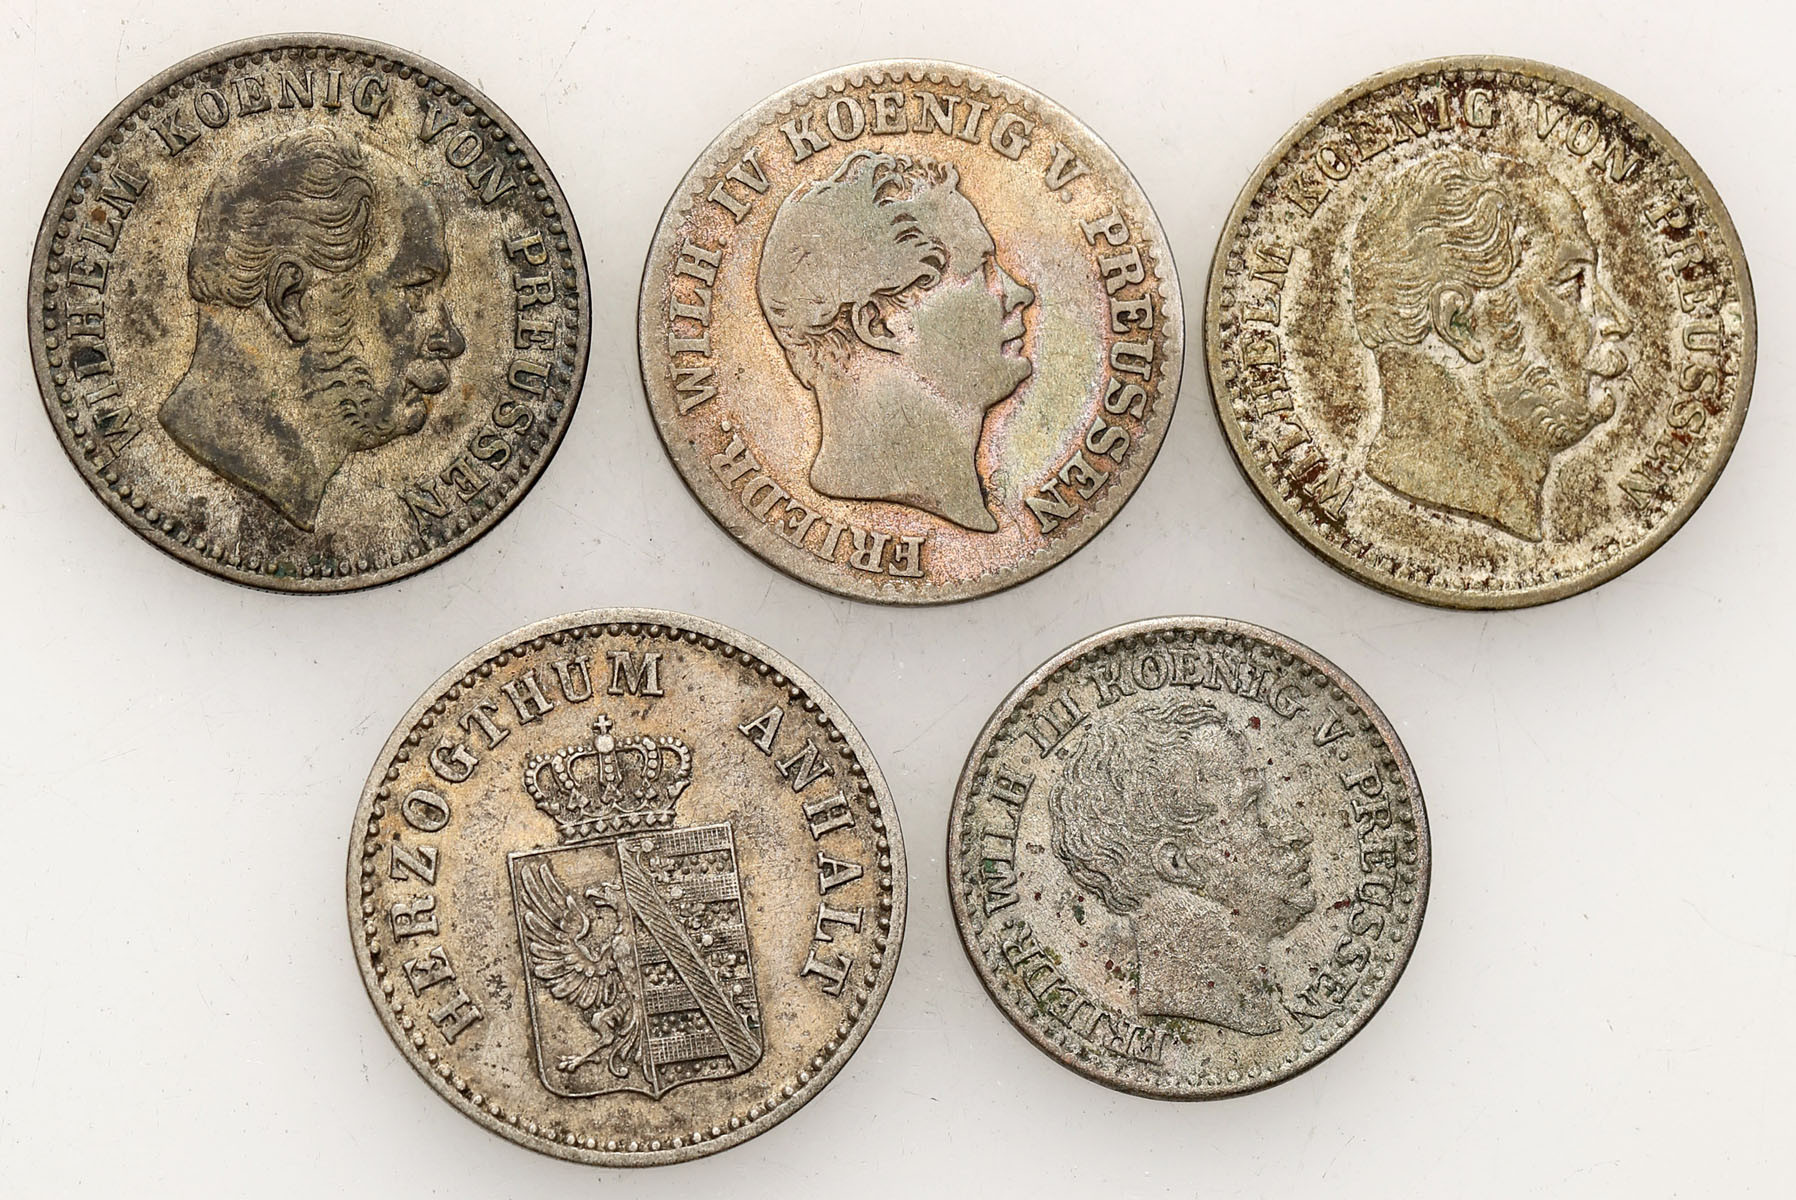 Niemcy, Prusy. 1, 2 1/2 silbergroschen 1822-1872, zestaw 5 monet